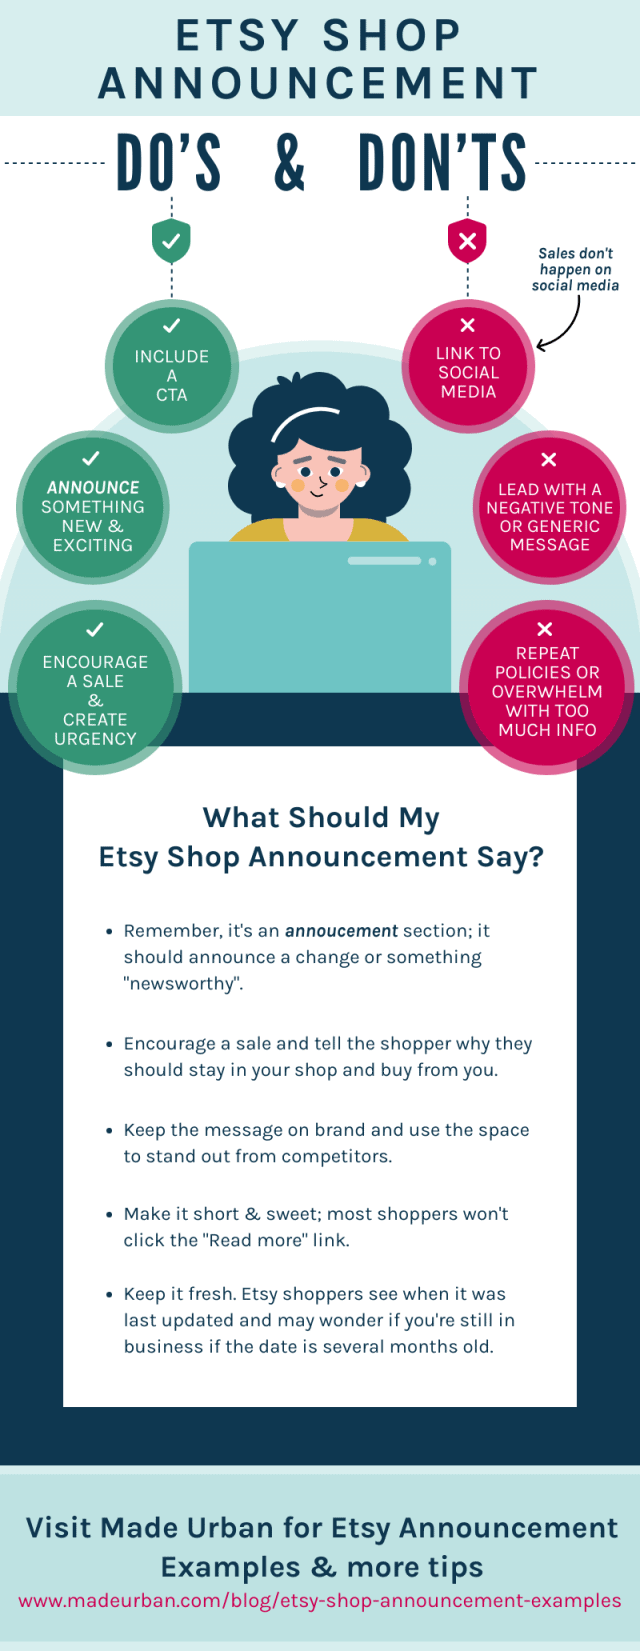 Etsy Shop Announcement Do's & Don'ts